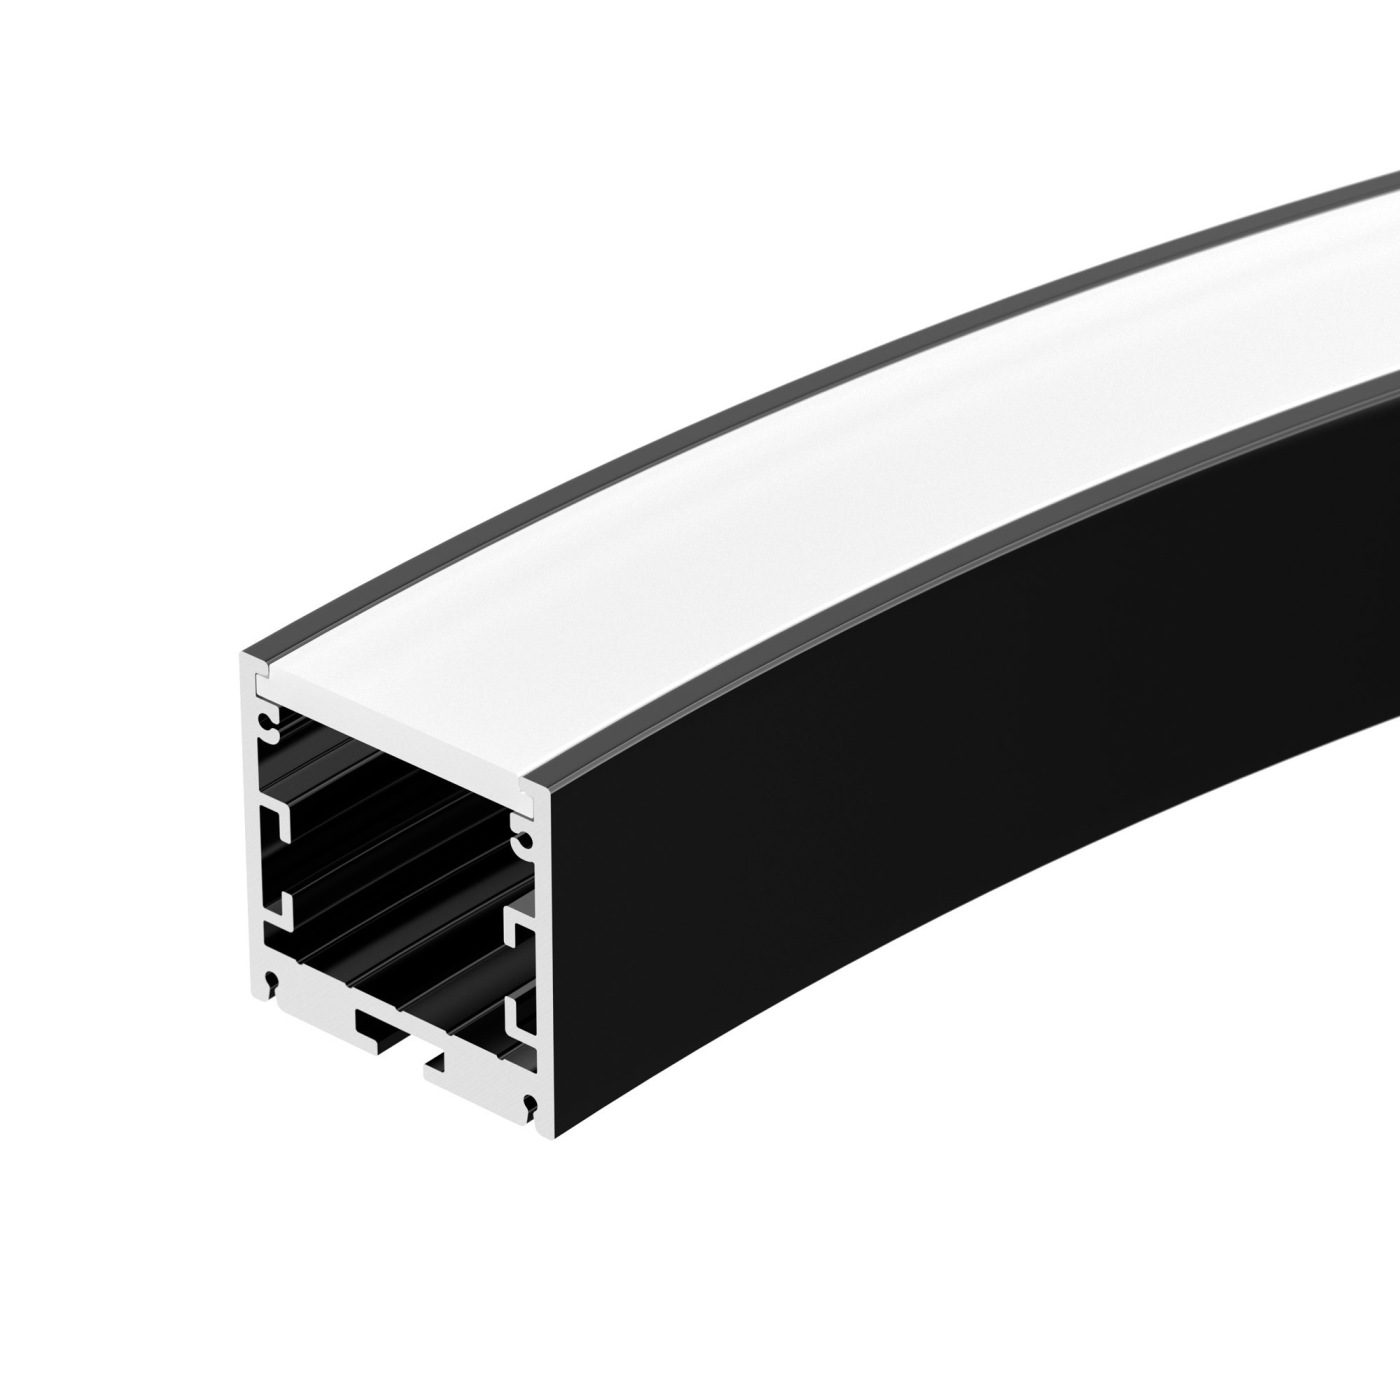 Профиль SL-ARC-3535-D800-A90 BLACK (630мм, дуга 1 из 4) (Arlight, Алюминий) профиль глубокий алюминиевый для светодиодной ленты прямой 2 м чёрный